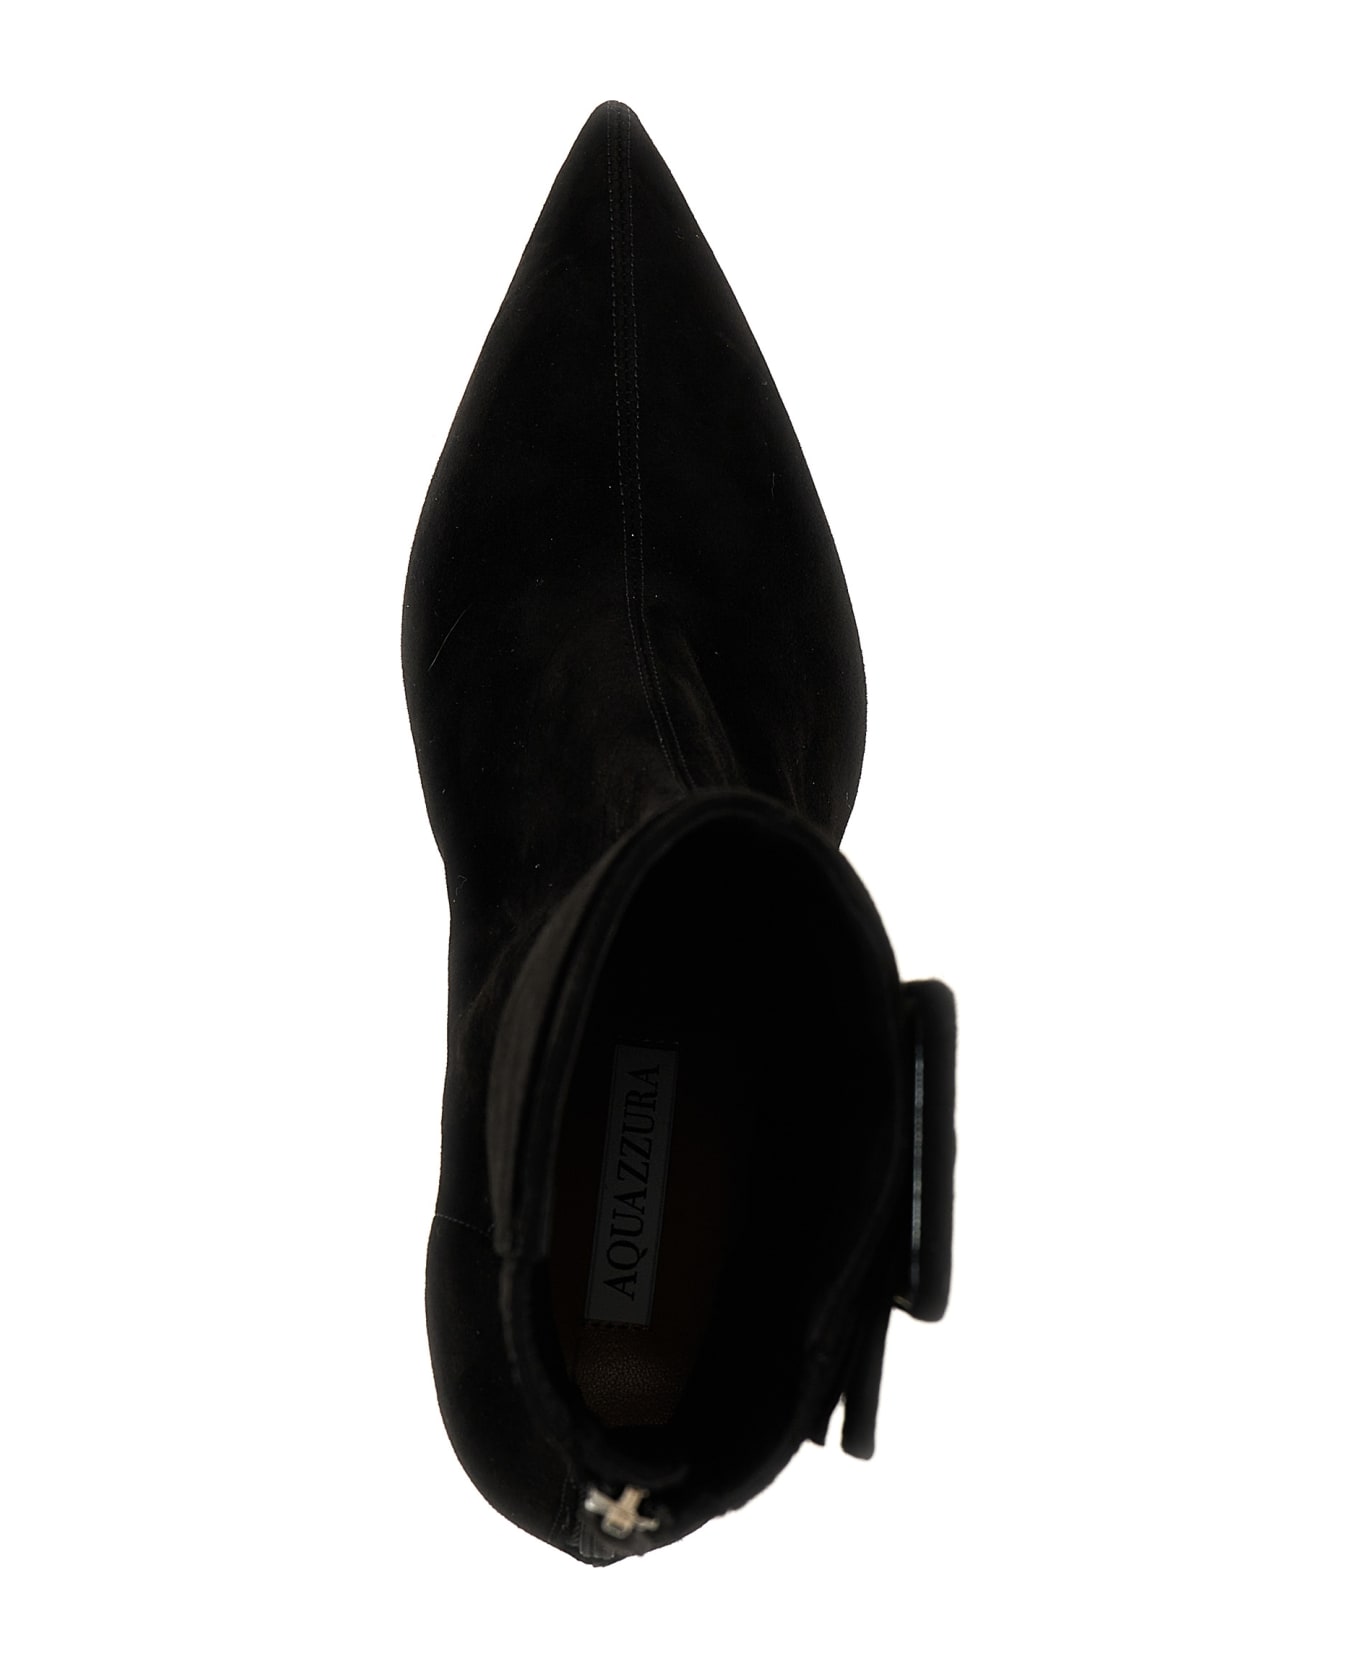 Aquazzura 'st. Honoré' Ankle Boots - Black  